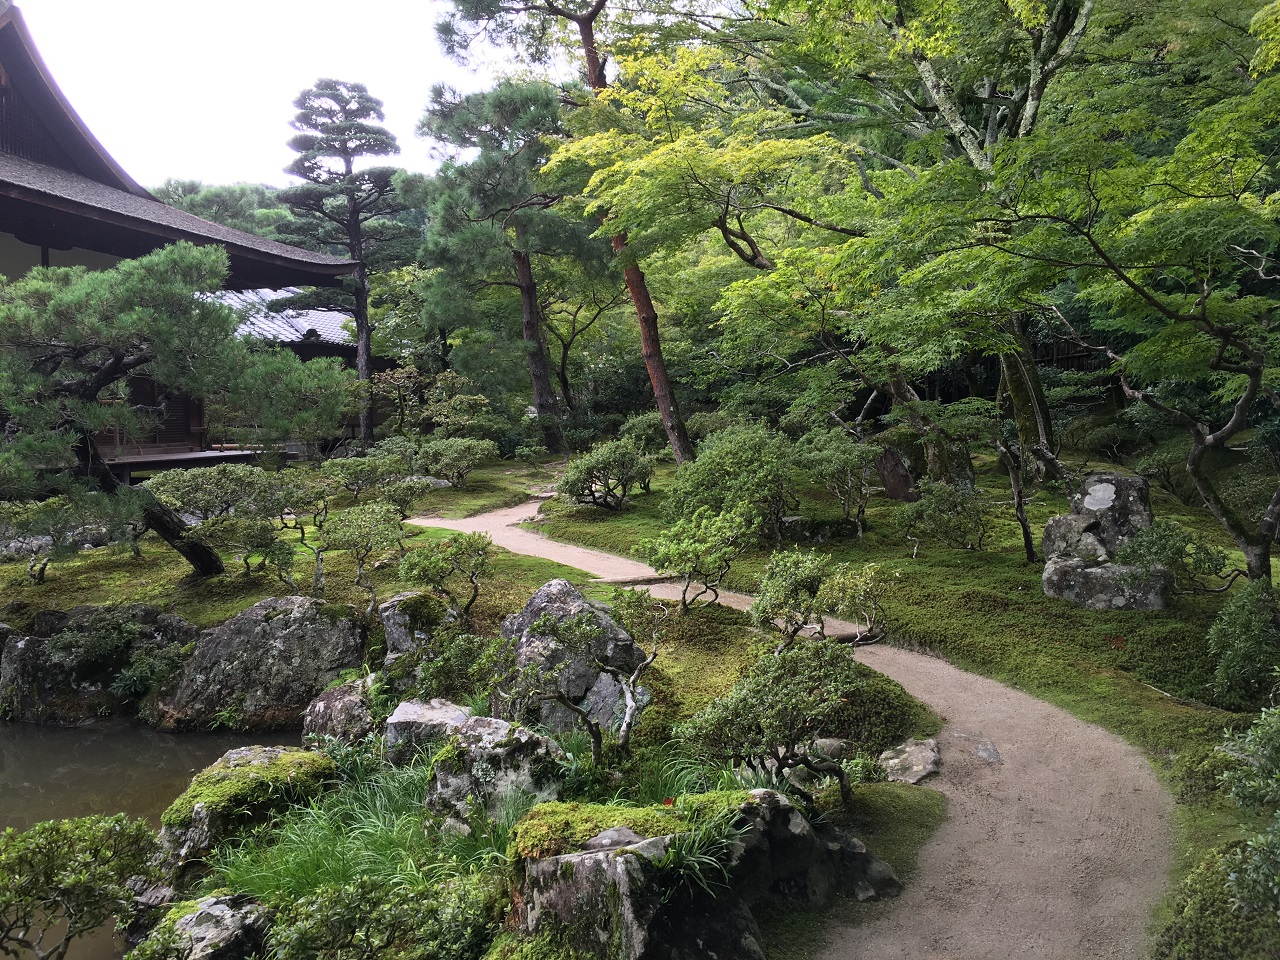 어느 곳을 찍어도 화보다. 완벽한 구도와 배치를 자랑하는 일본식 정원의 끝판왕.